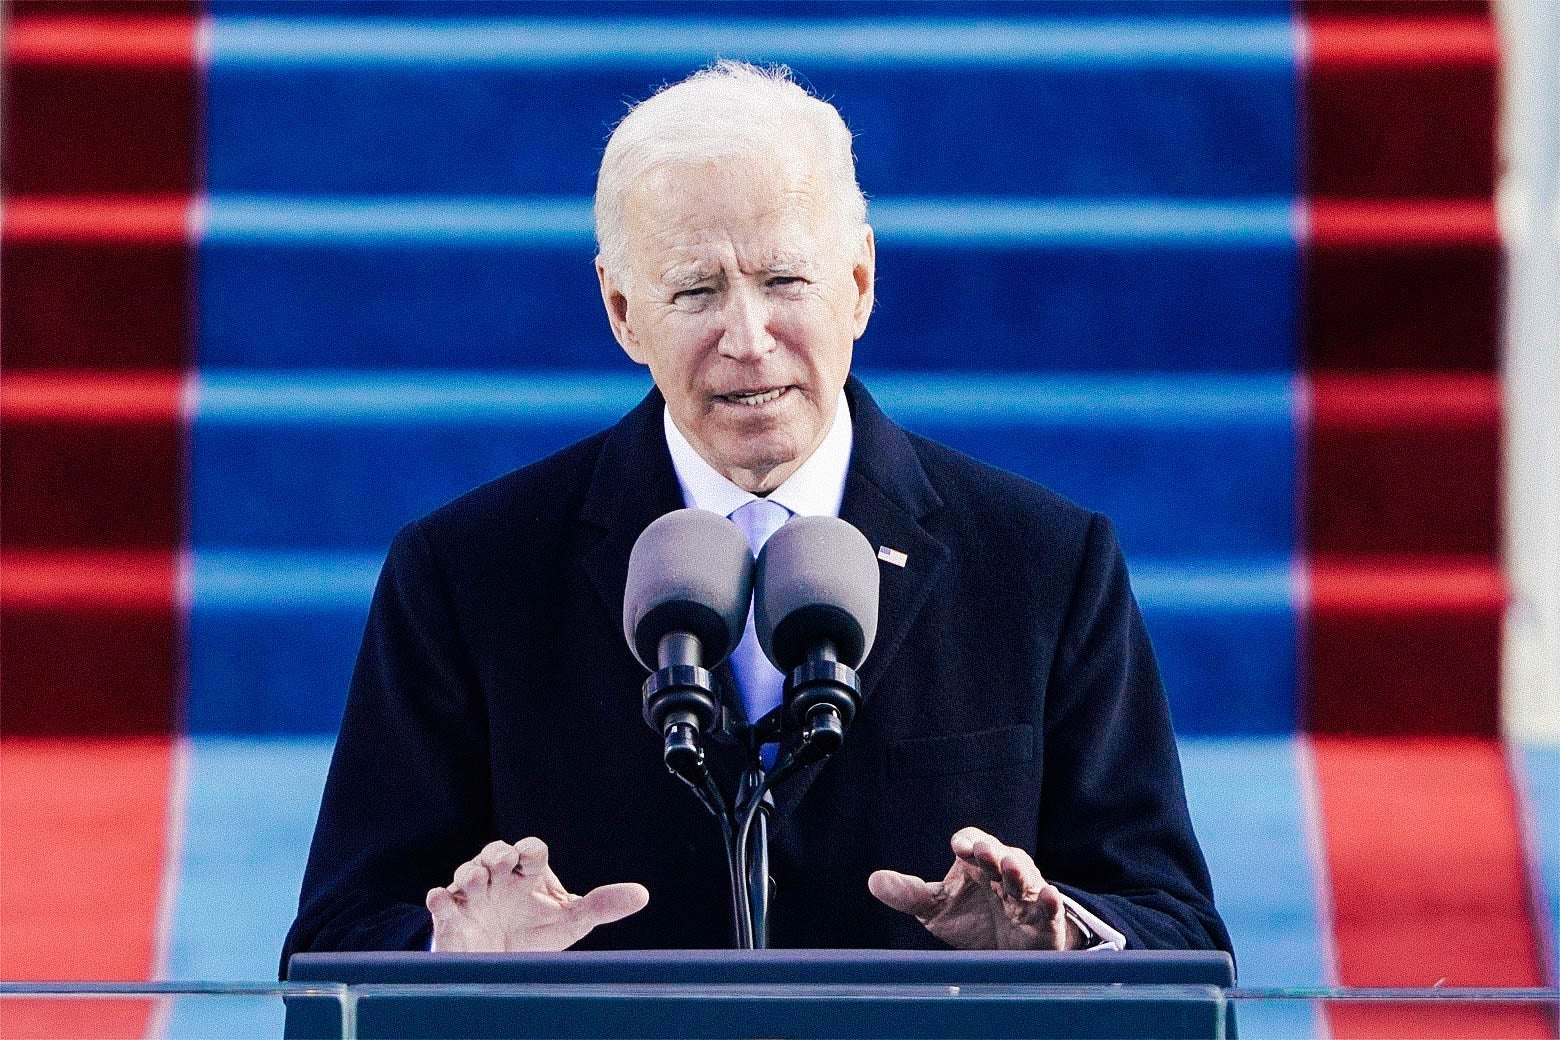 Joe Biden speaks into a microphone.